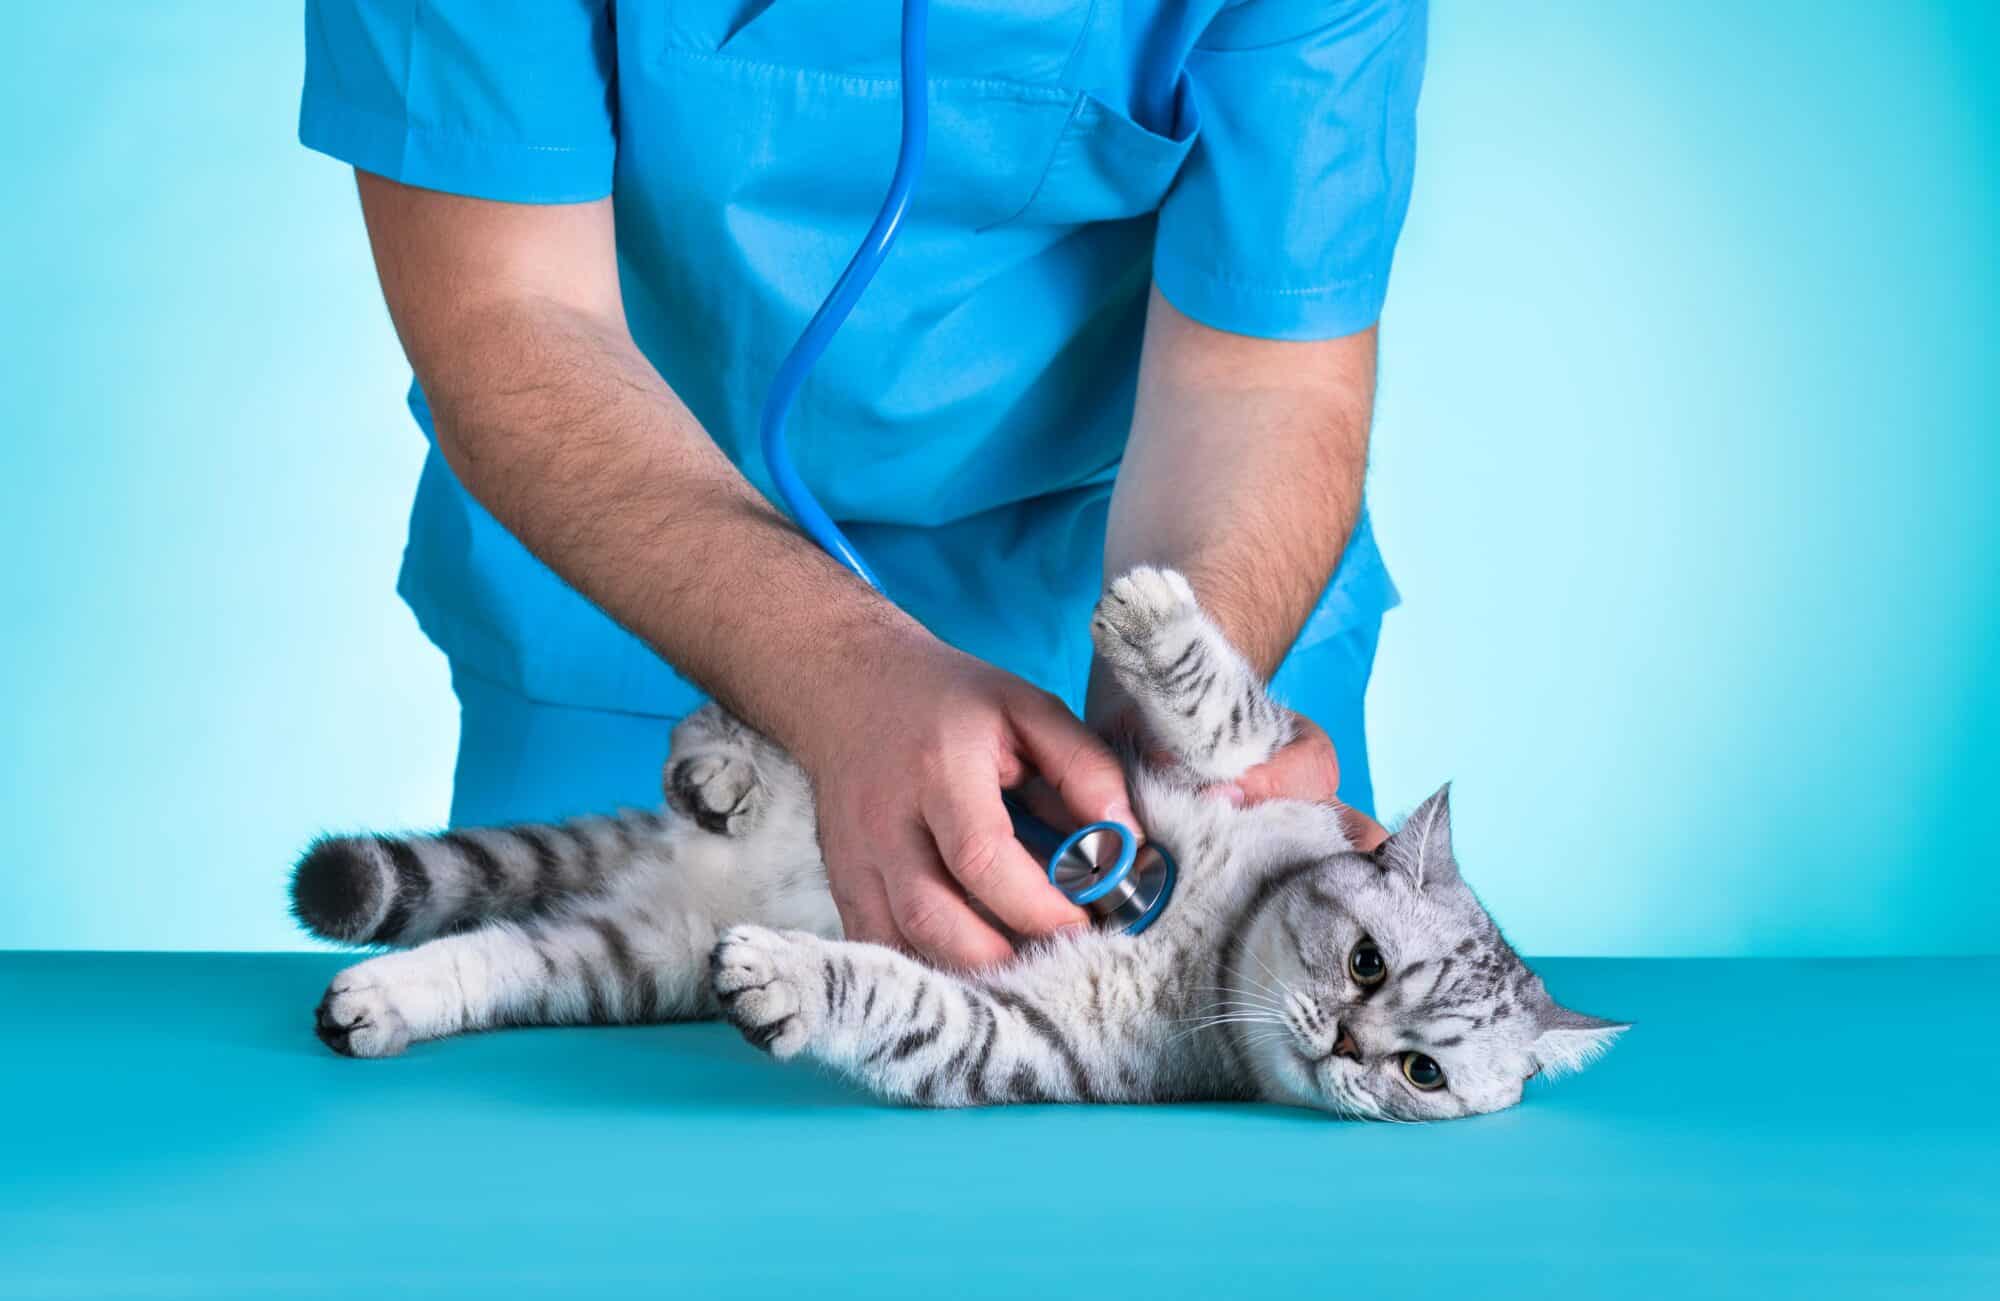 cat getting health checkup at veterinarian 